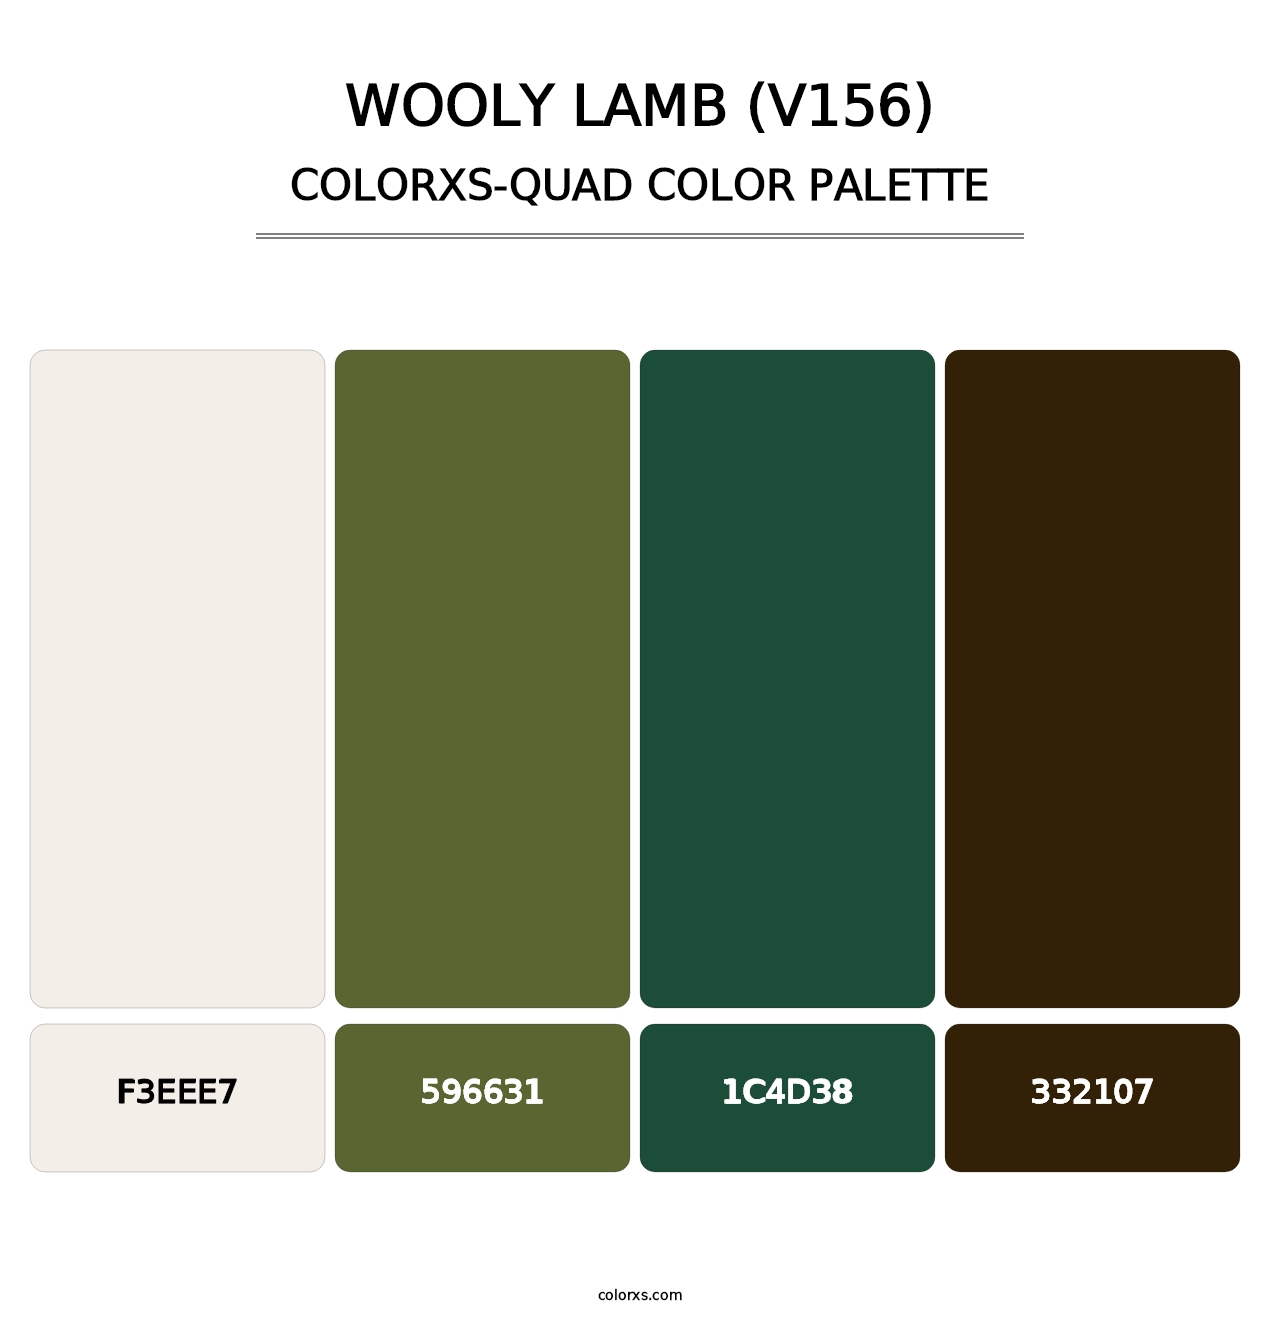 Wooly Lamb (V156) - Colorxs Quad Palette